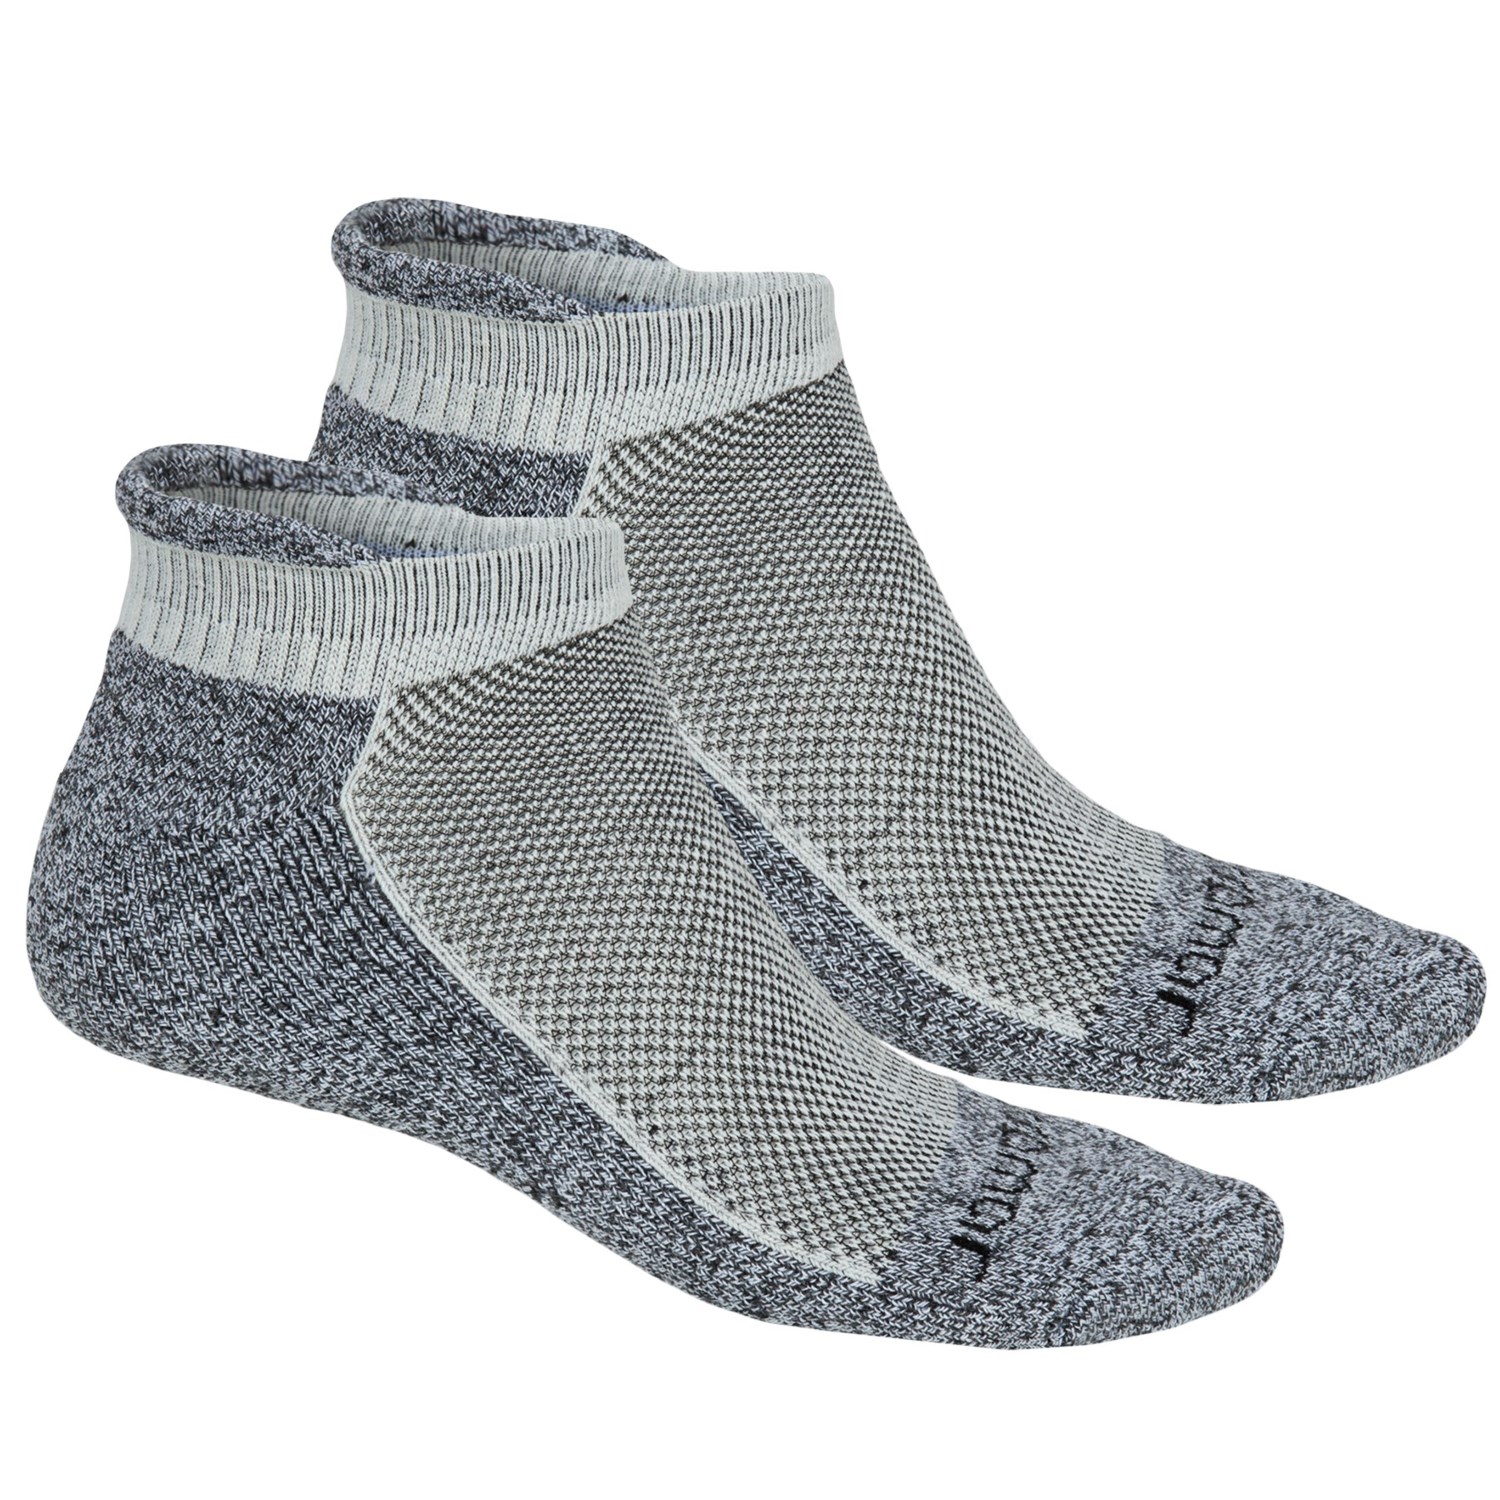 Terramar Cool-Dry Pro Socks (For Men) - Save 69%